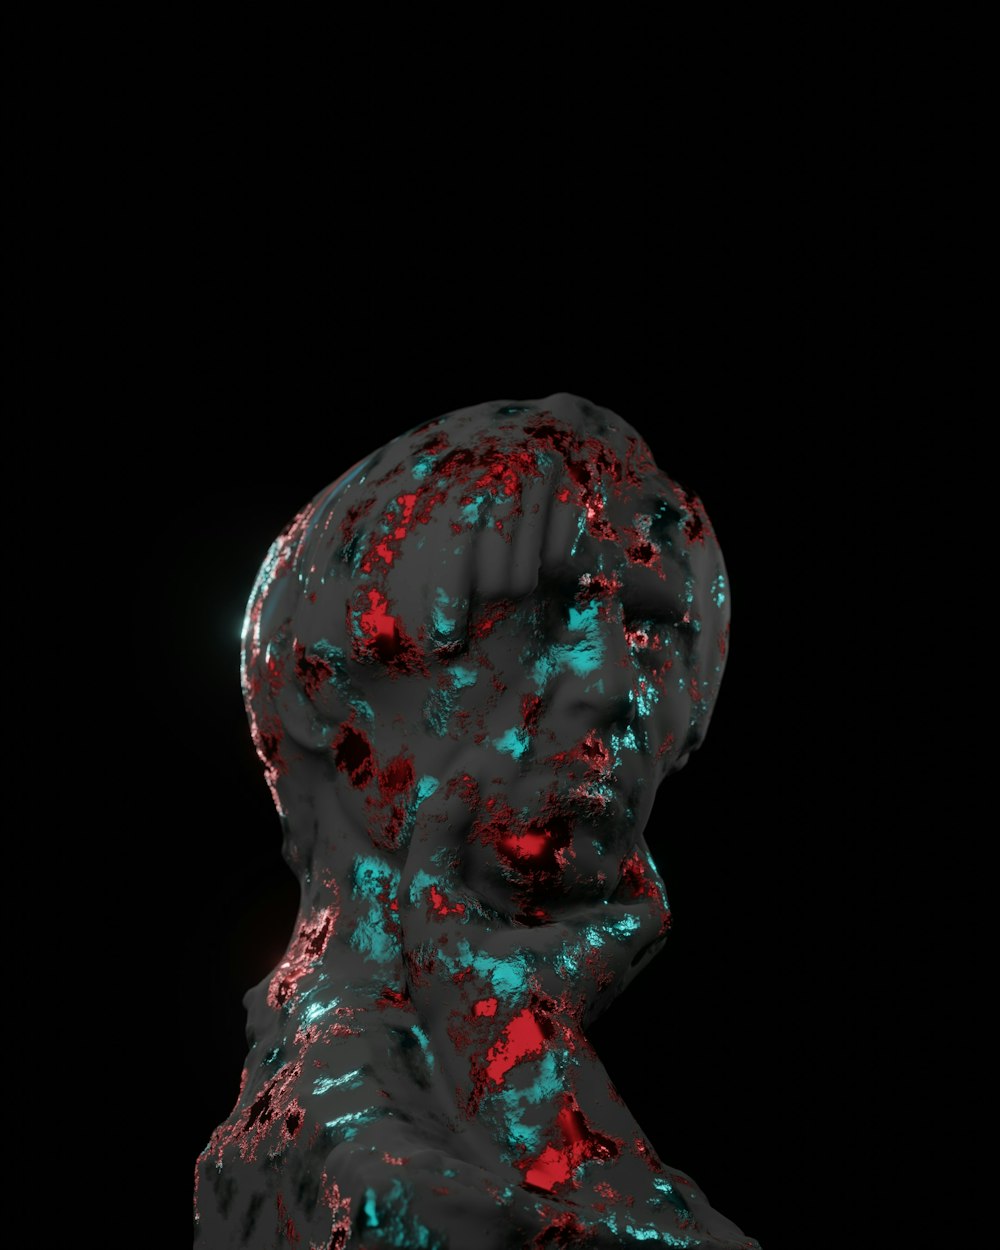 Un primer plano de una cabeza humana con un fondo negro